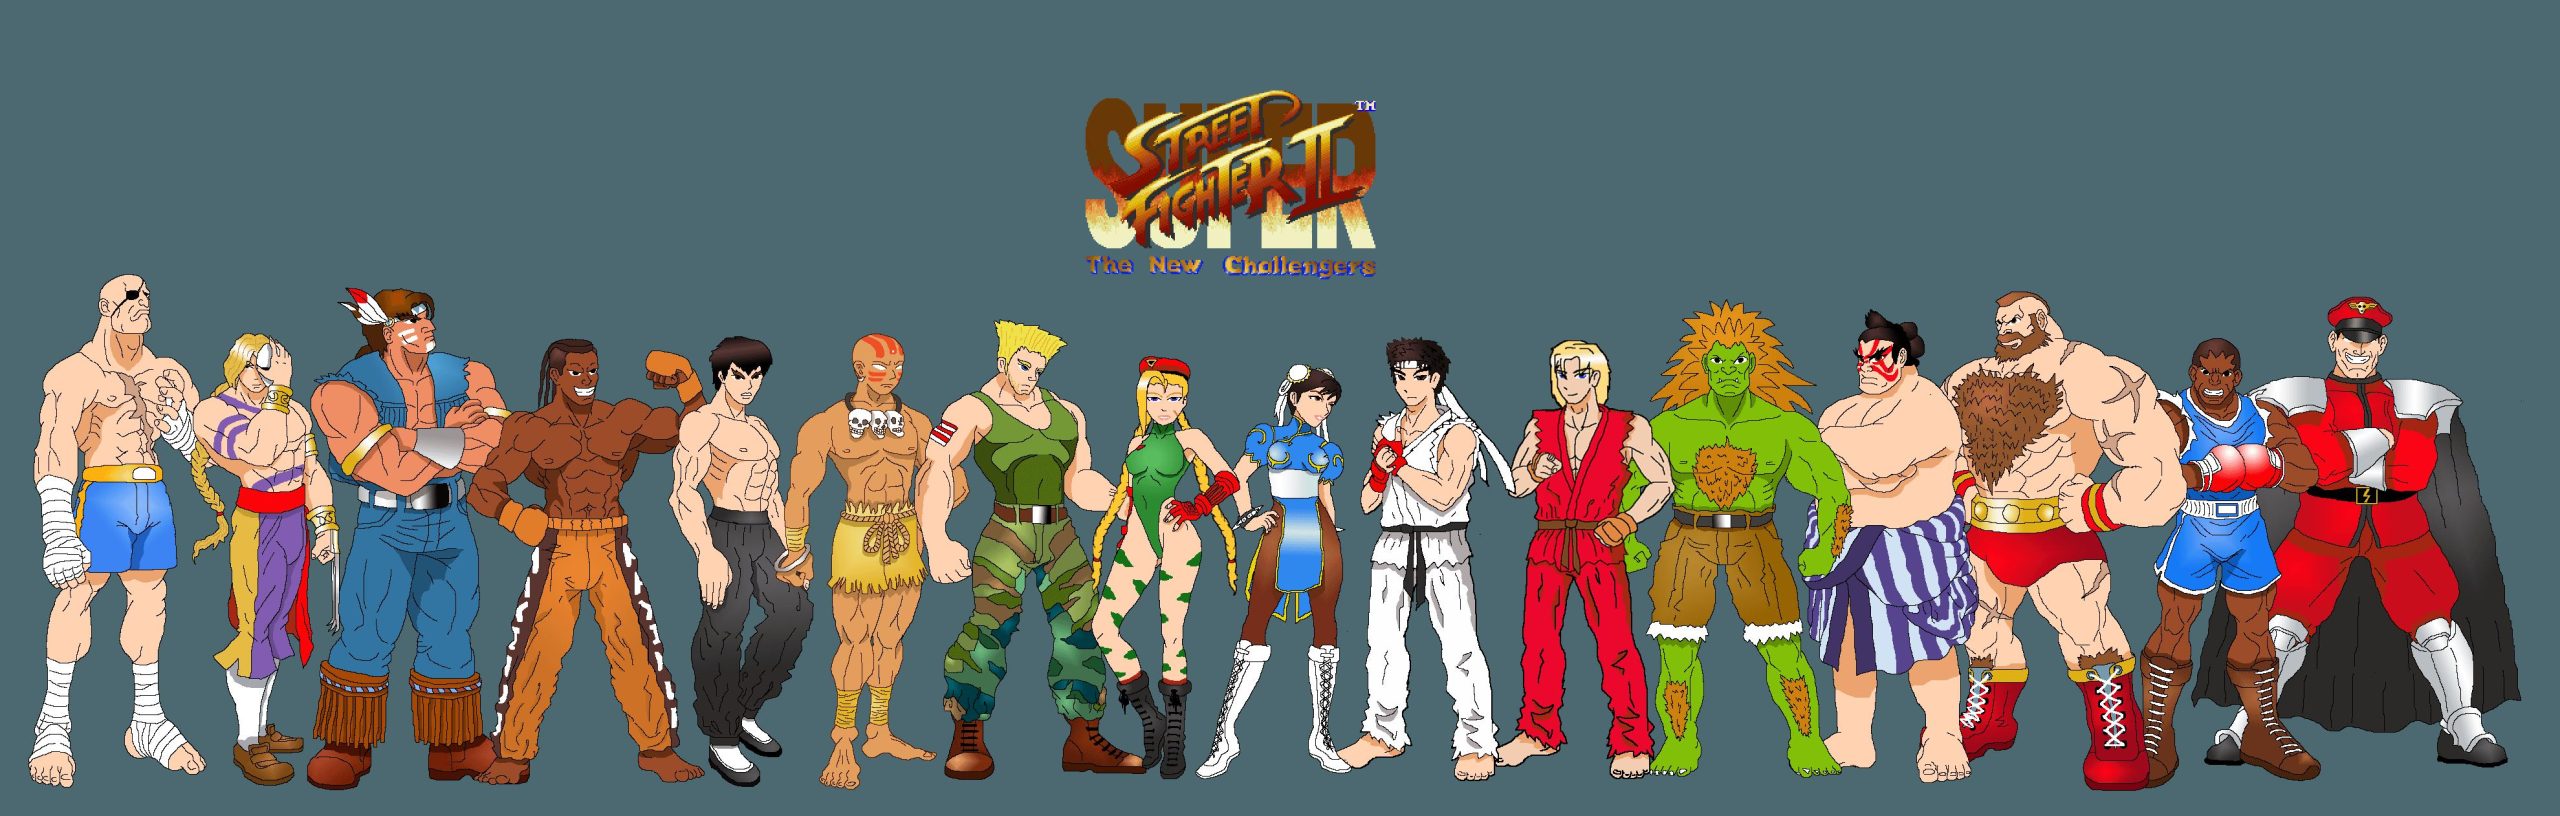 SUPER Street Fighter II TURBO HD Remix Hd Wallpapers For Pc, SUPER Street Fighter II TURBO HD Remix, Game